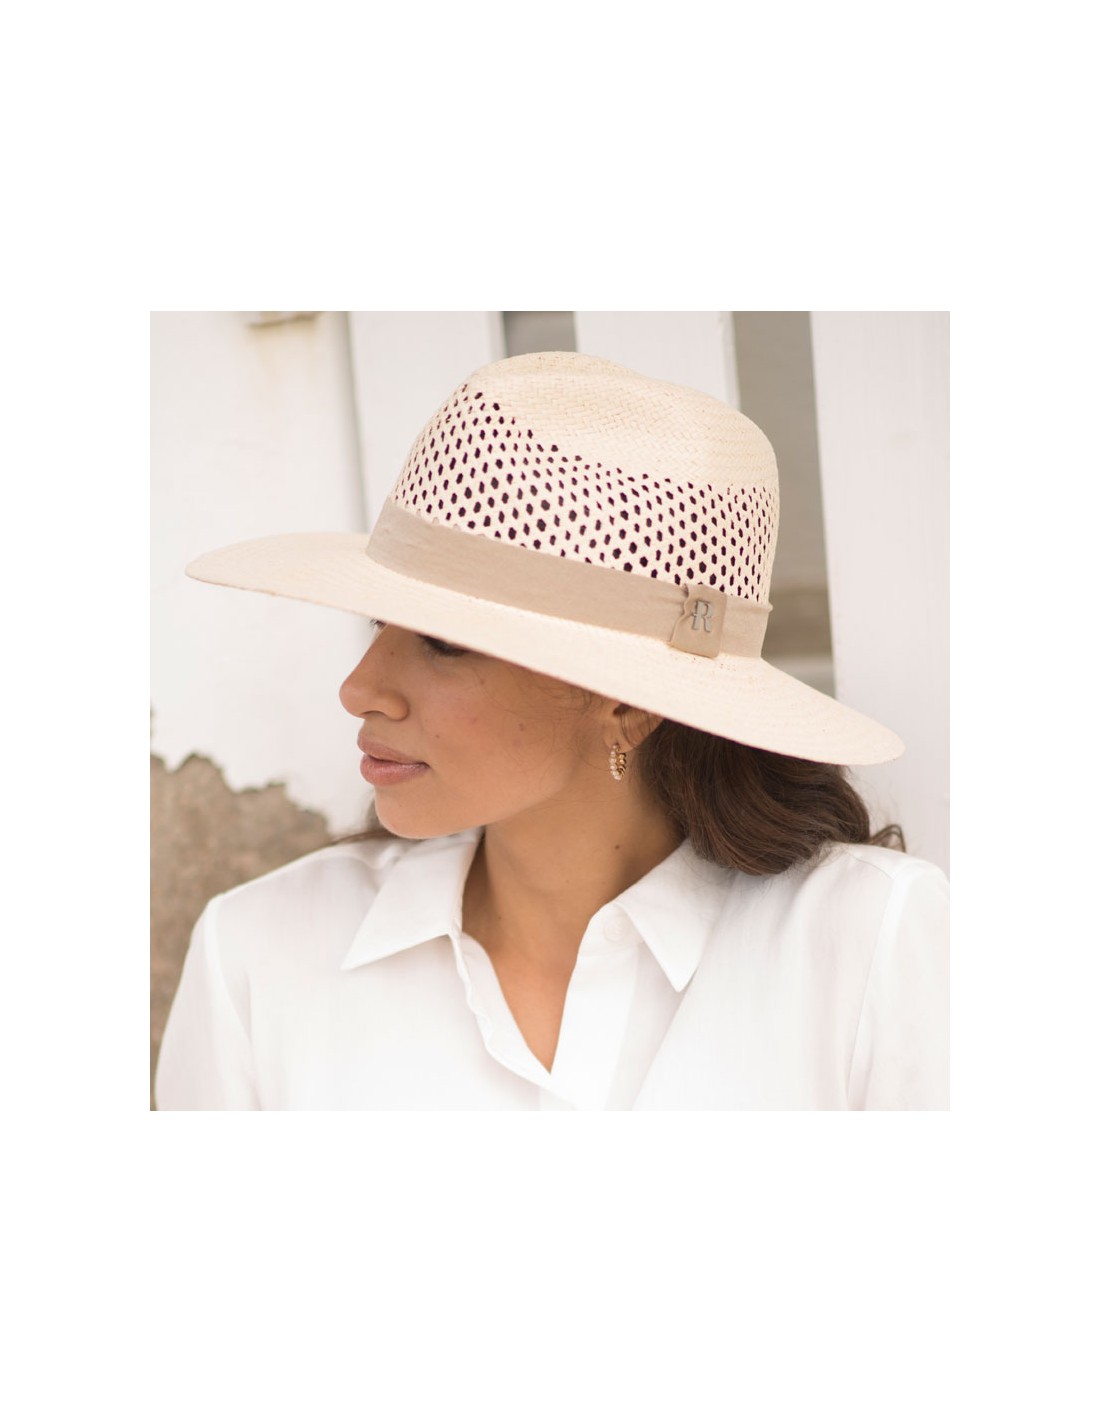 Descubre el Exclusivo Sombrero Fedora en Reciclado Raceu Hats